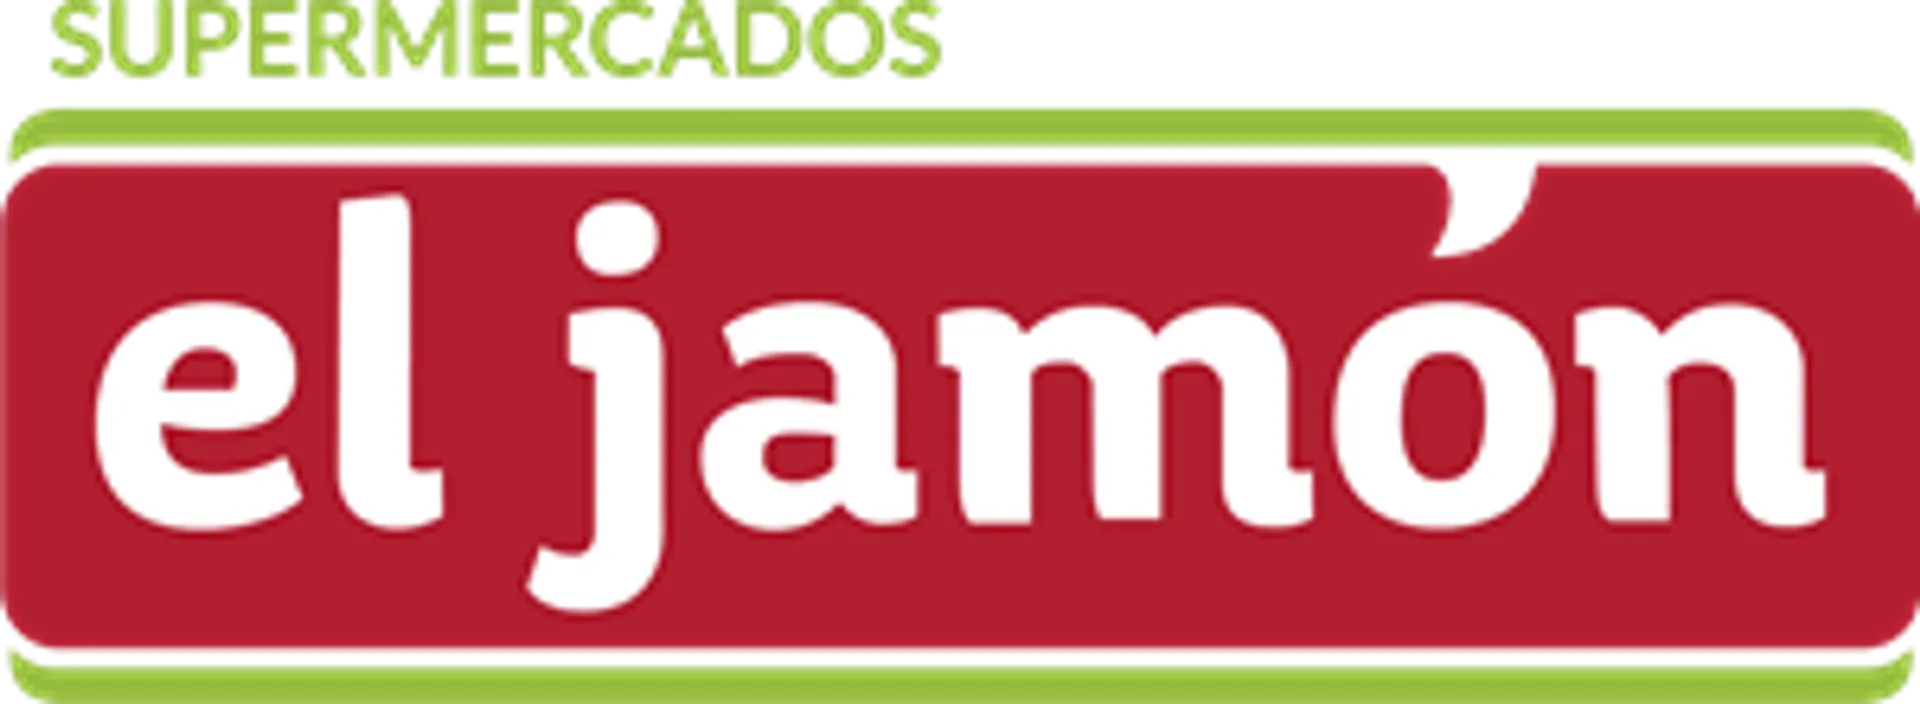 SUPERMERCADOS EL JAMÓN logo